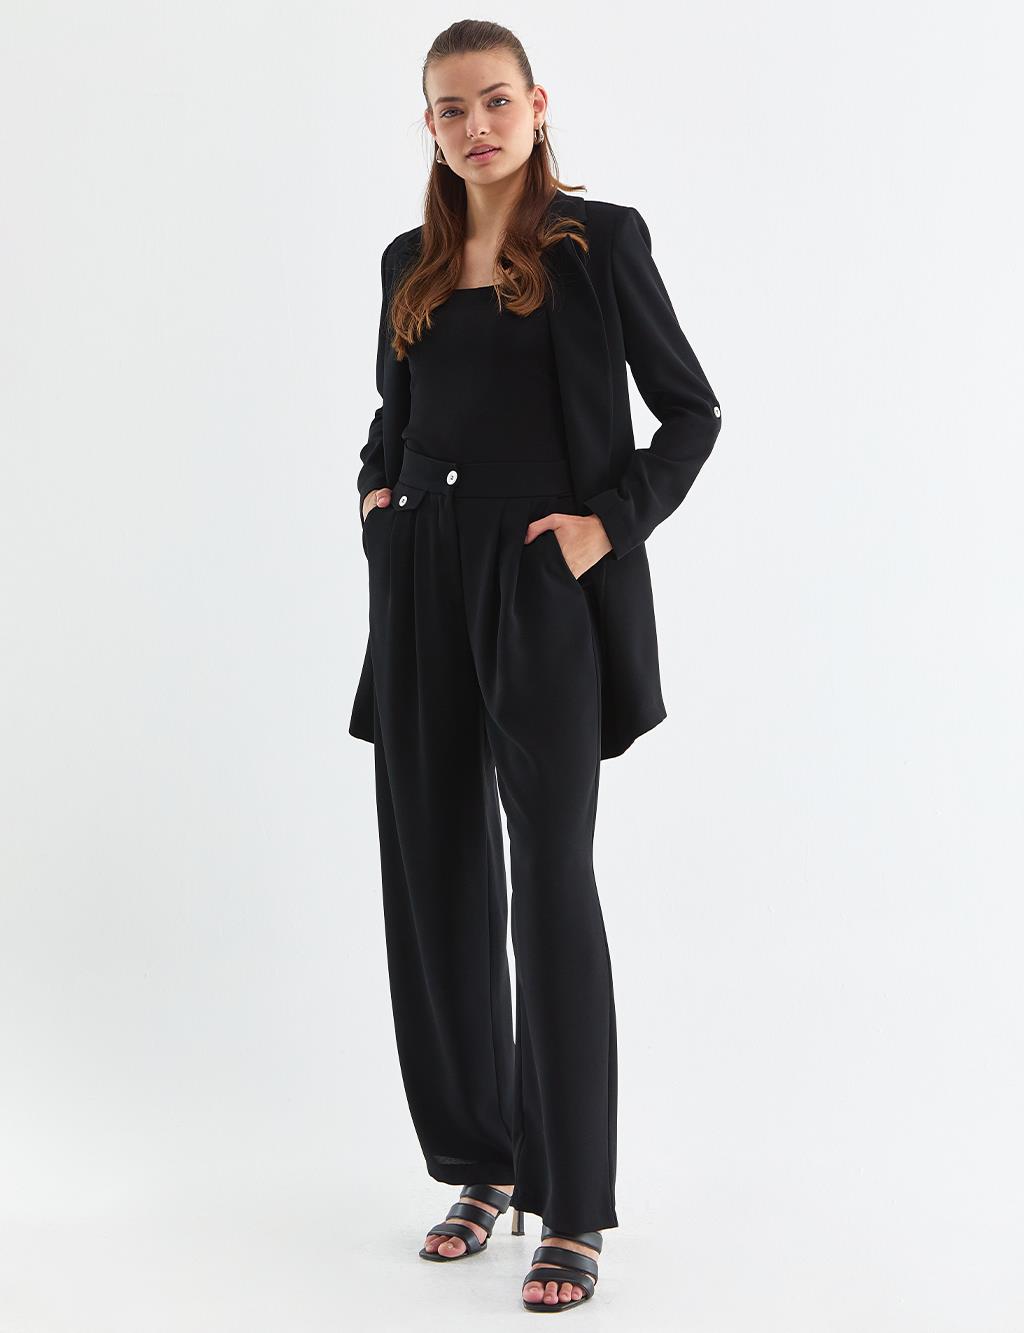 Contrast Buttoned Suit Black